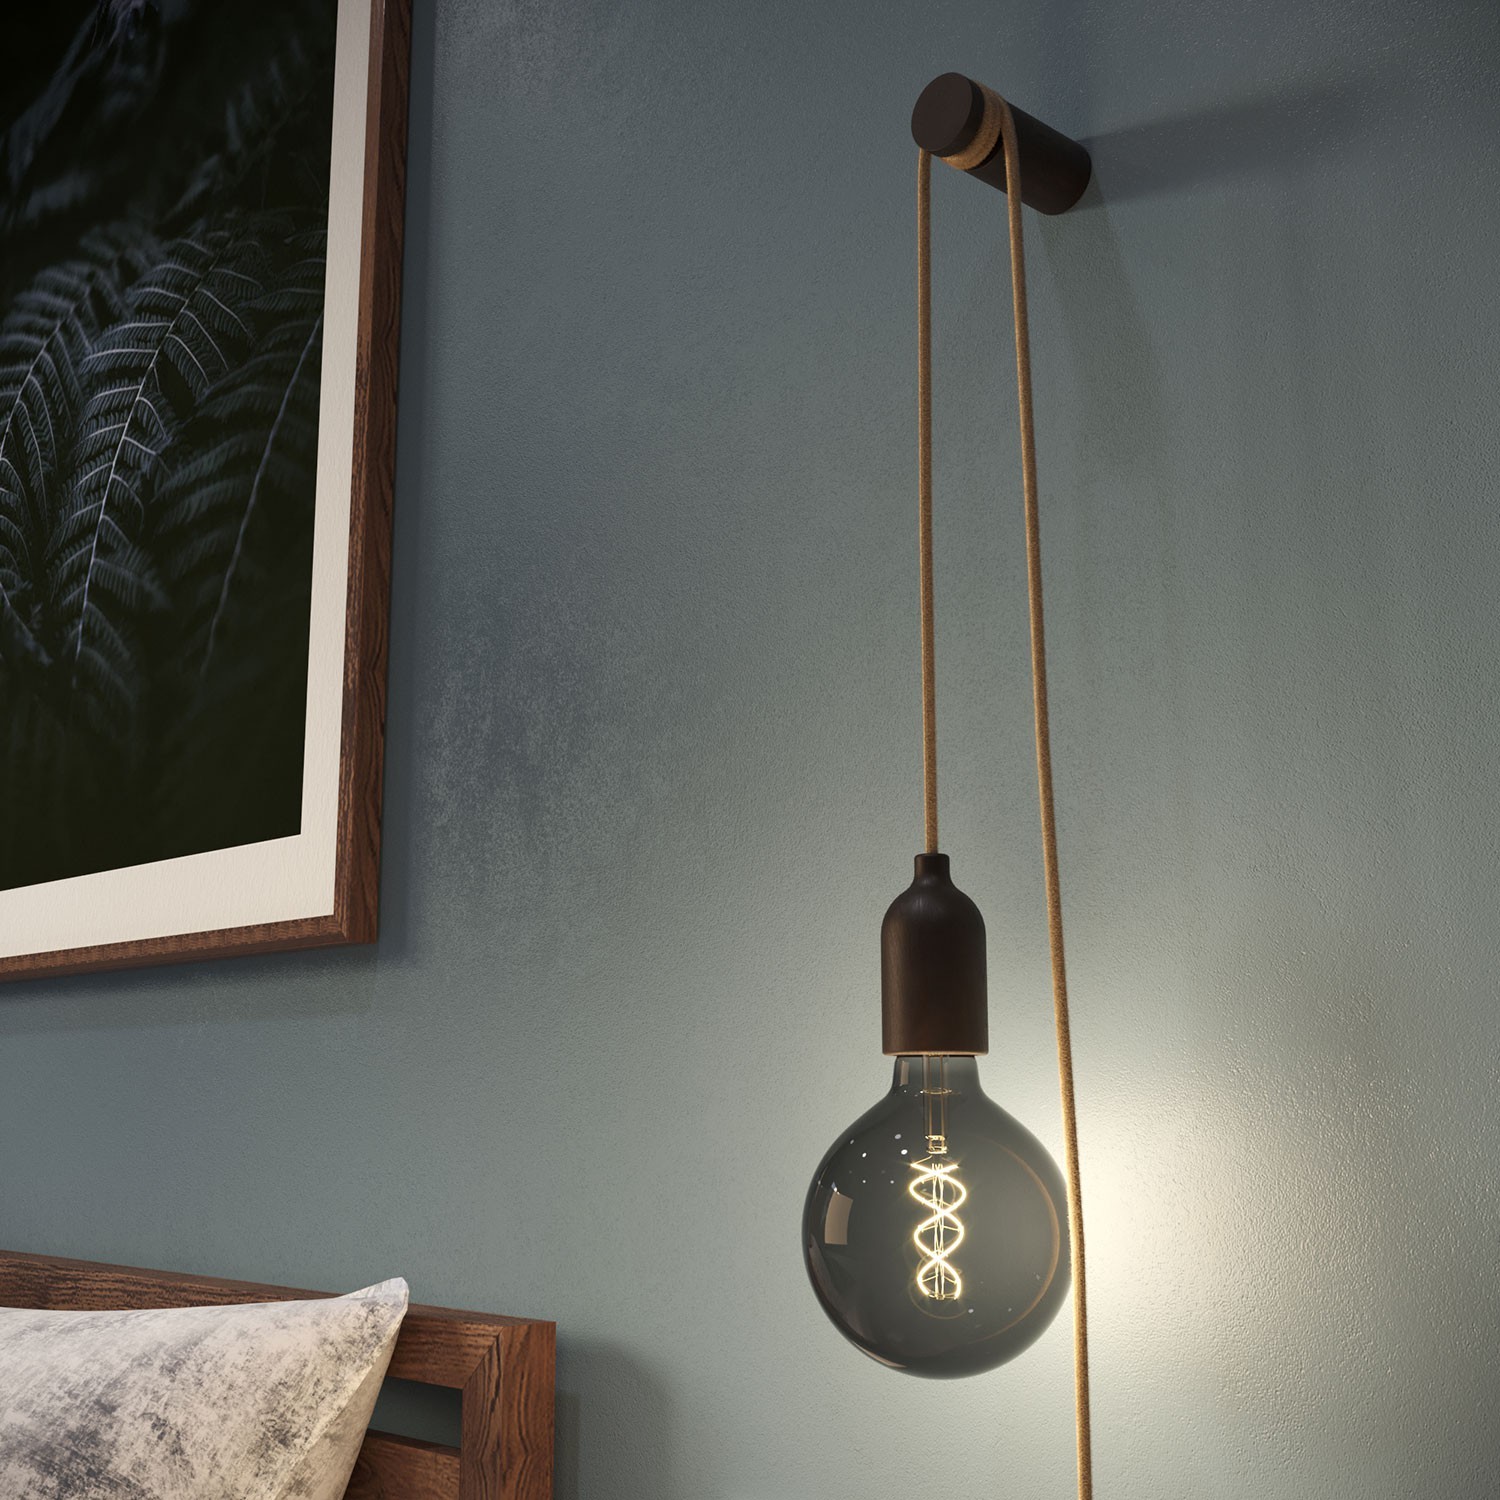 Snake, Zuleitung mit Lampenfassung aus Holz, Stecker und Schalter, komplett mit Rolé, unserem Wand- oder Deckenpin aus Holz